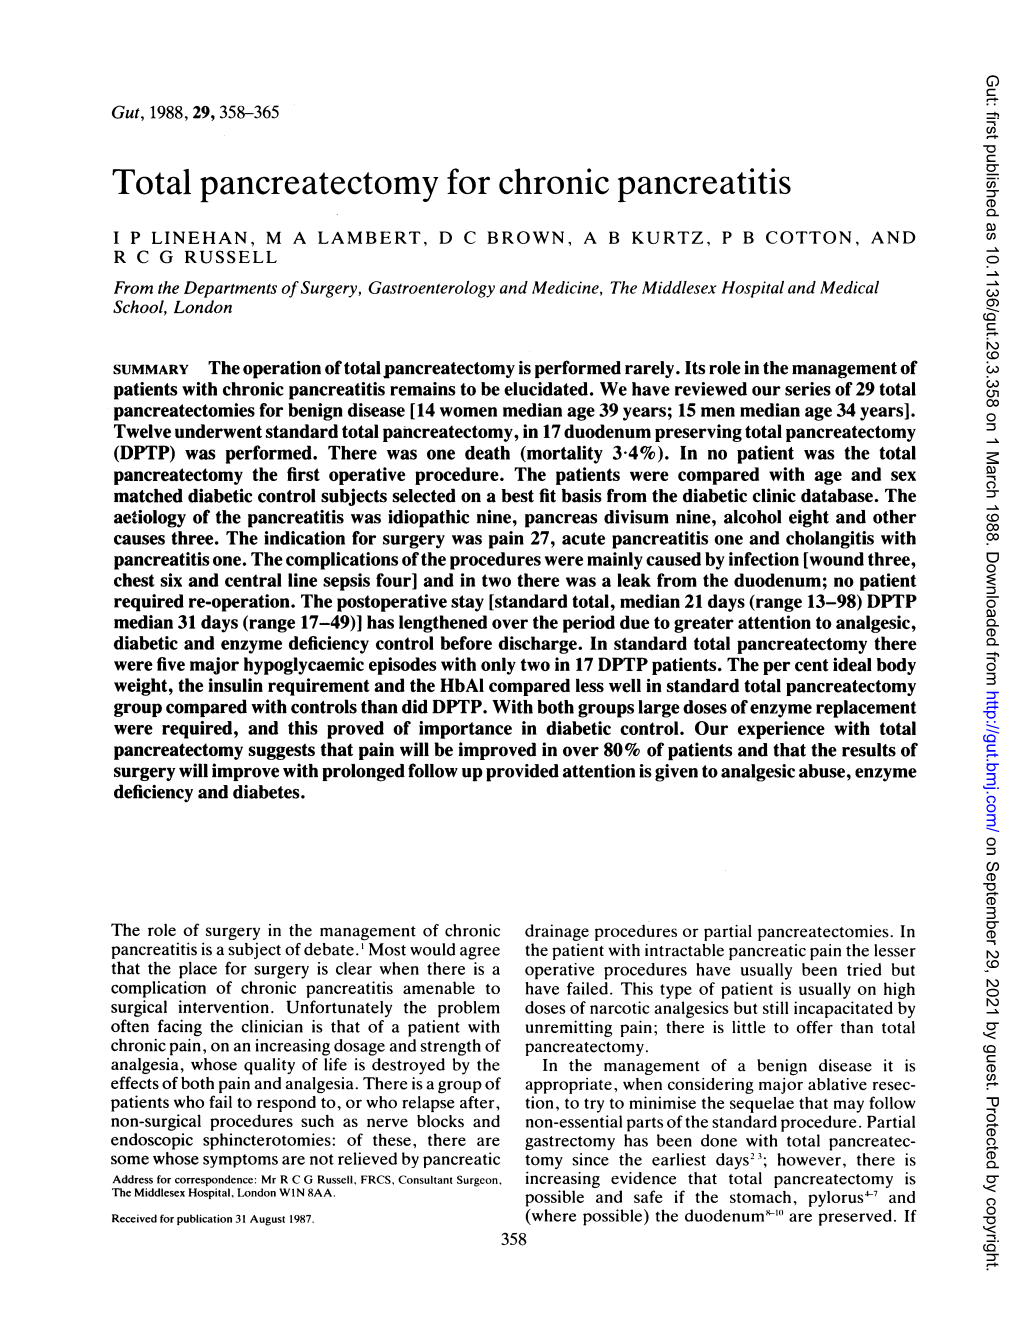 Total Pancreatectomy for Chronic Pancreatitis